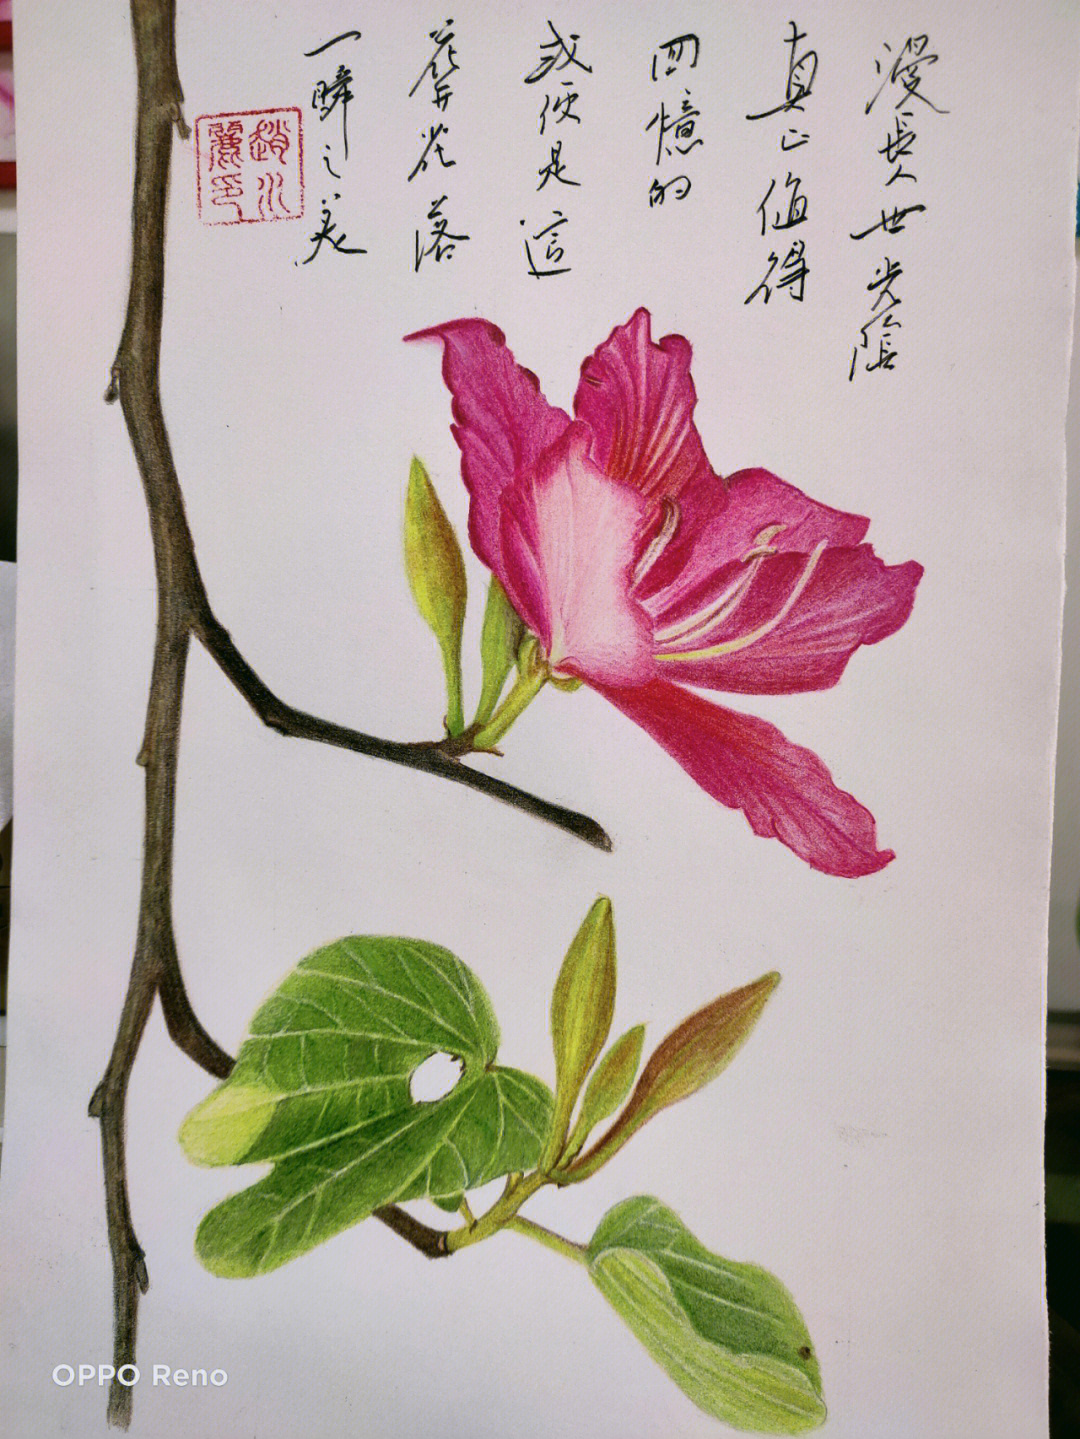 紫荆花彩铅图片